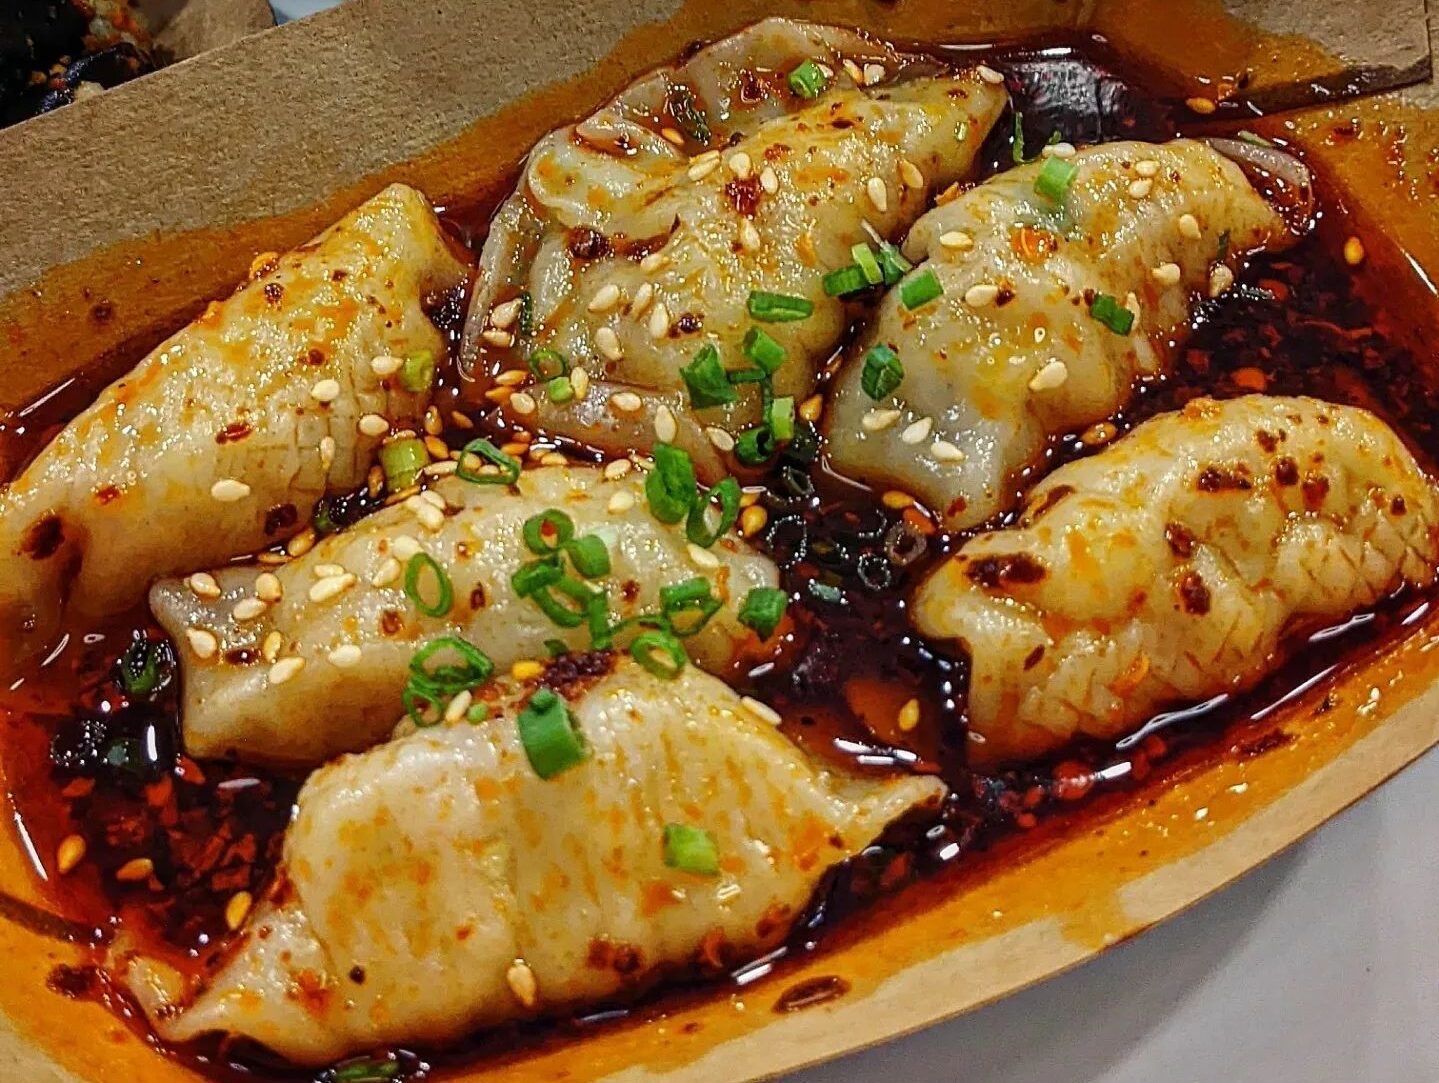 dumpling - Sichuan spicy dumpling